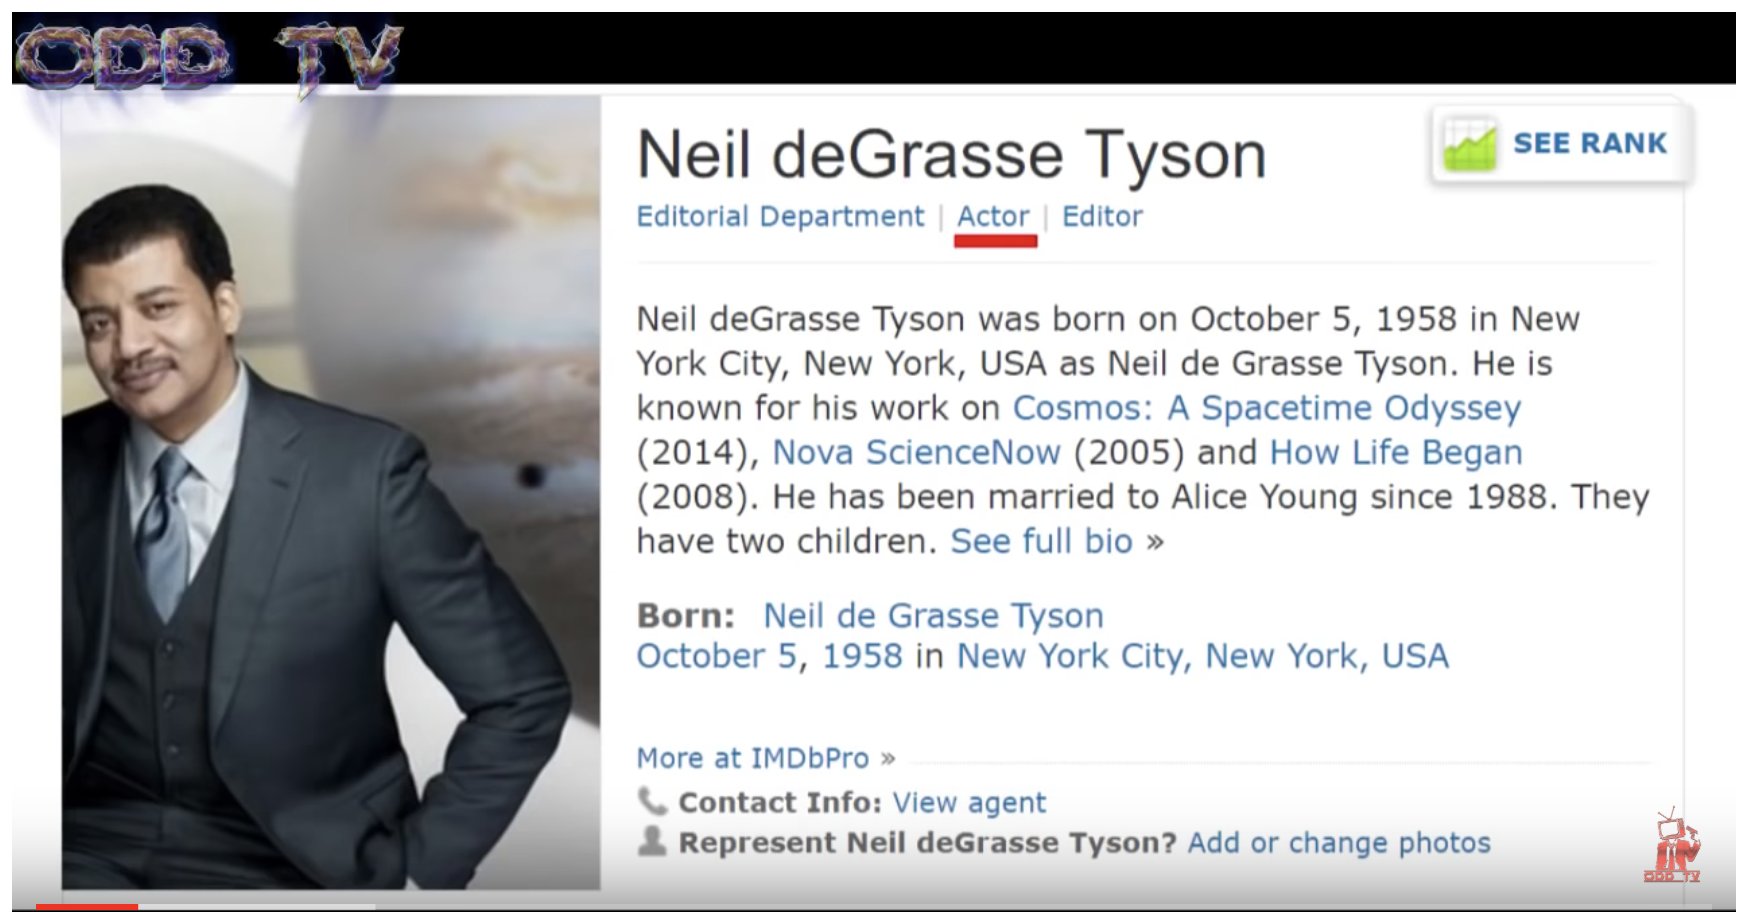 ΒΟΜΒΑ: ΗΘΟΠΟΙΟΣ του ΧΟΛΙΓΟΥΝΤ ο Neil deGrasse Tyson! – Neil deGrasse Tyson Exposed | Hollywood Actor ▶️️